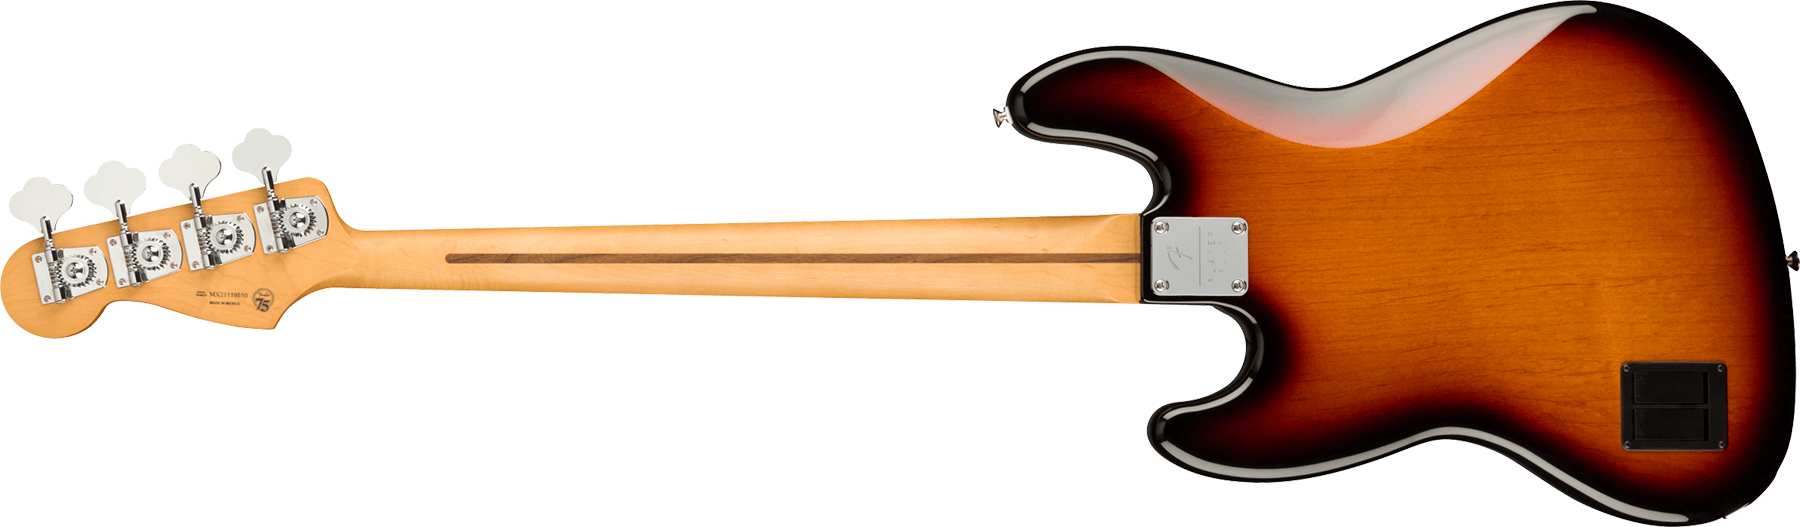 Fender Jazz Bass Player Plus Mex Active Pf - 3-color Sunburst - Solid body elektrische bas - Variation 1